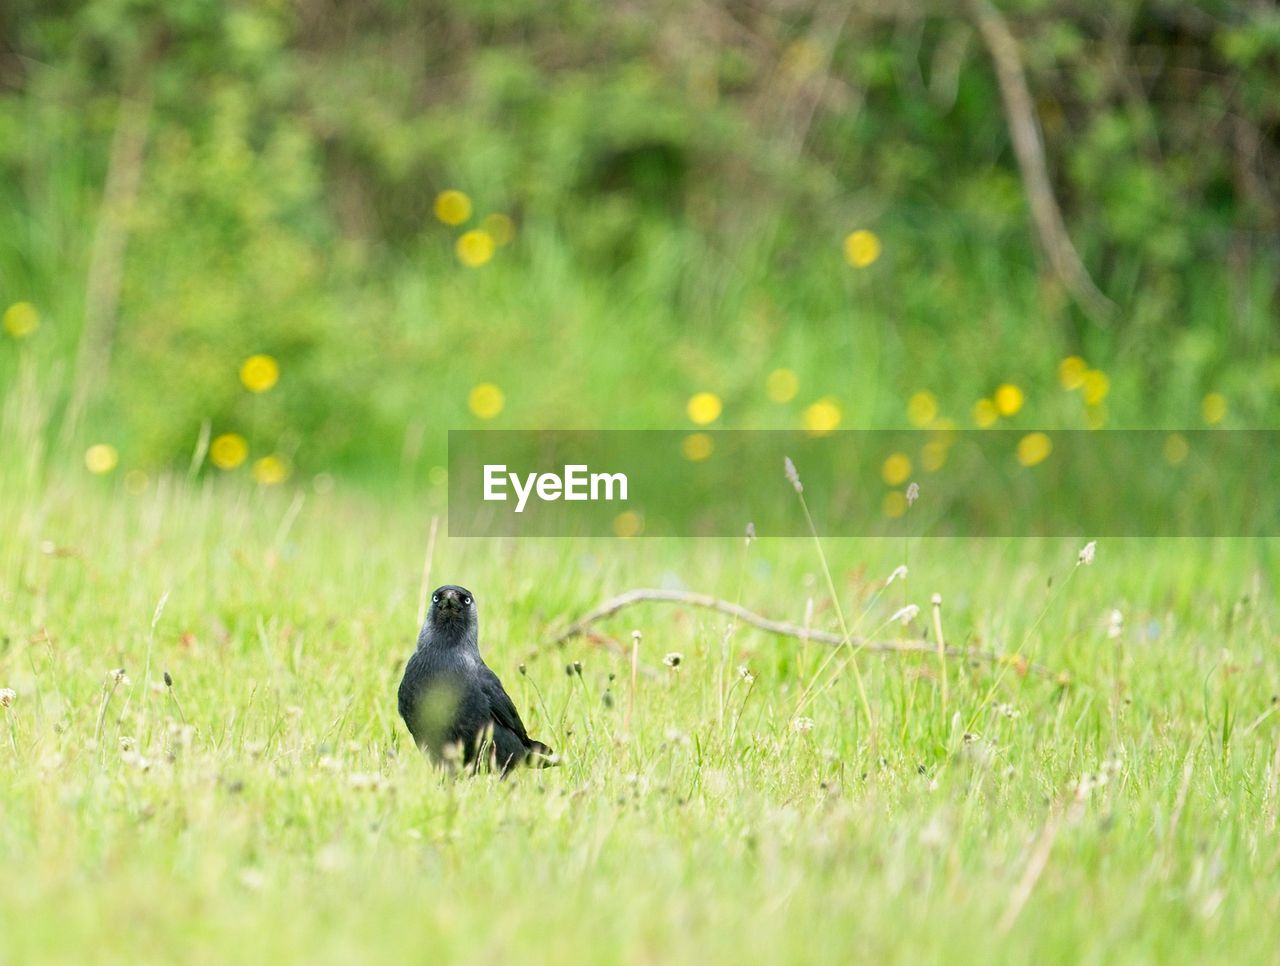 Jackdaw bird in a field